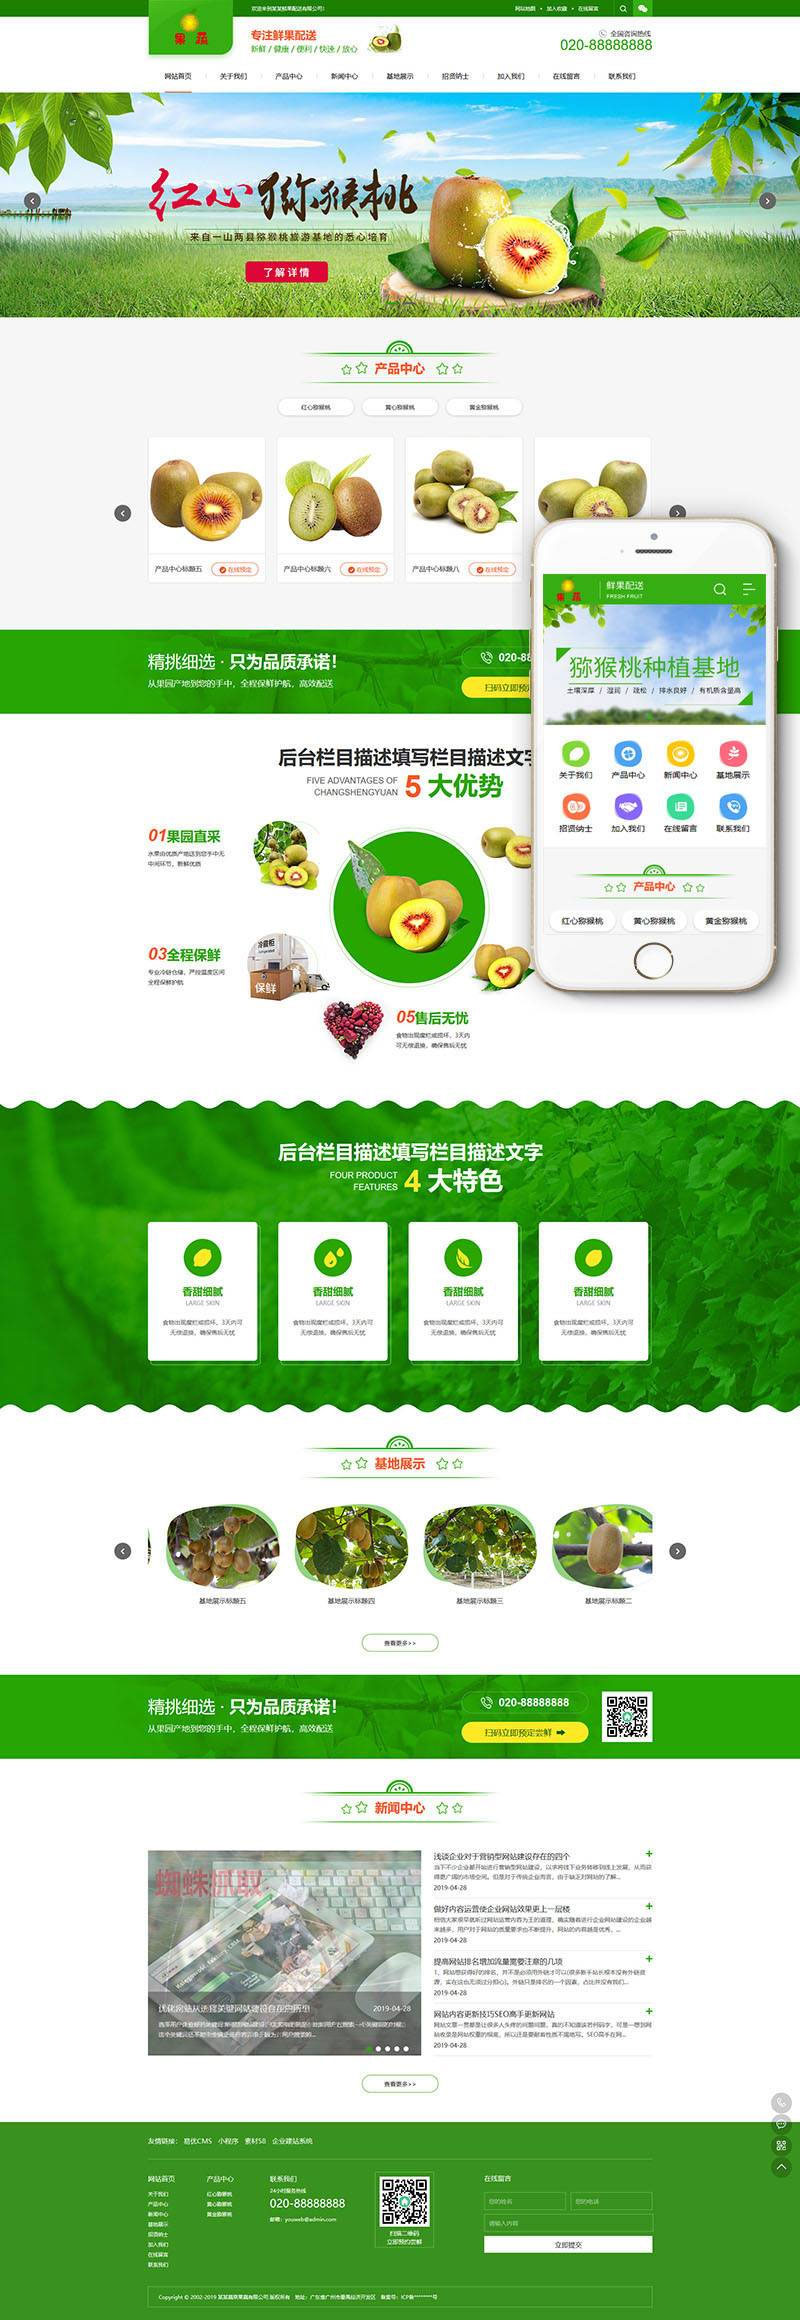 蔬菜果蔬鲜果配送公司网站源码 织梦dedecms模板(带手机移动端)插图源码资源库